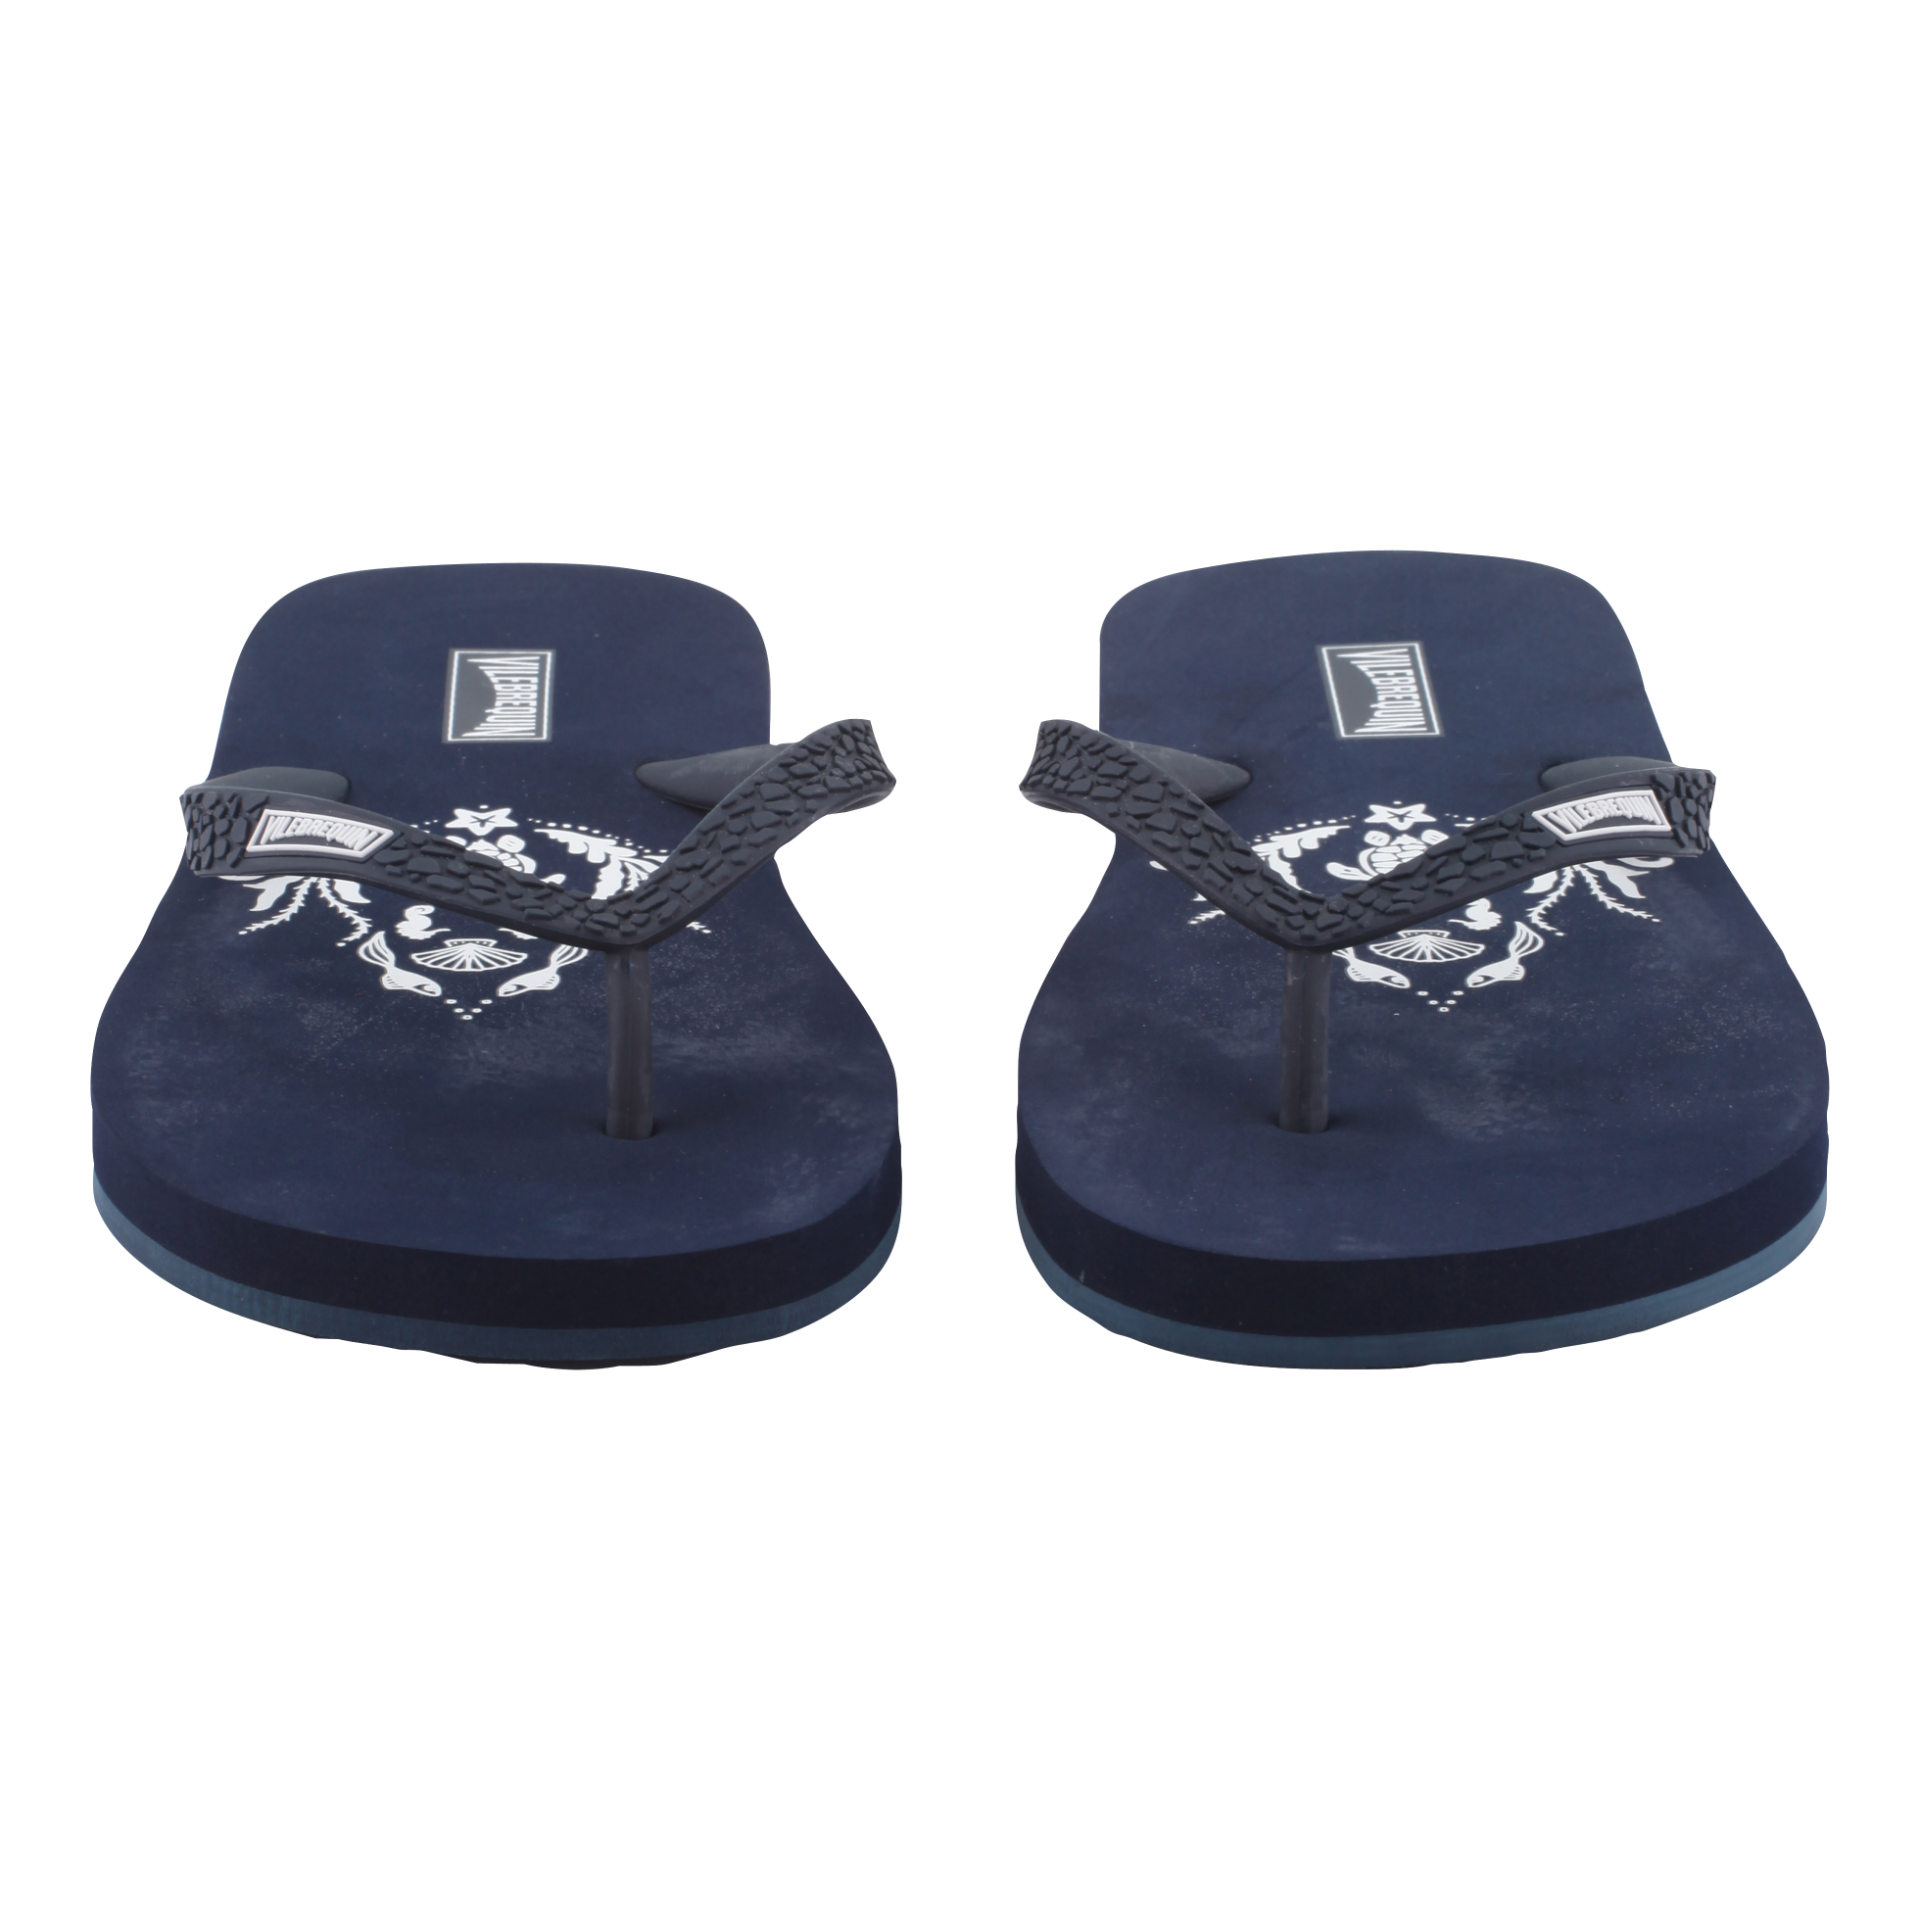 VILEBREQUIN Flip Flops Navy - Authentic & New - Size 3.5 / 4 - RRP Â£65+ ! - Image 6 of 7